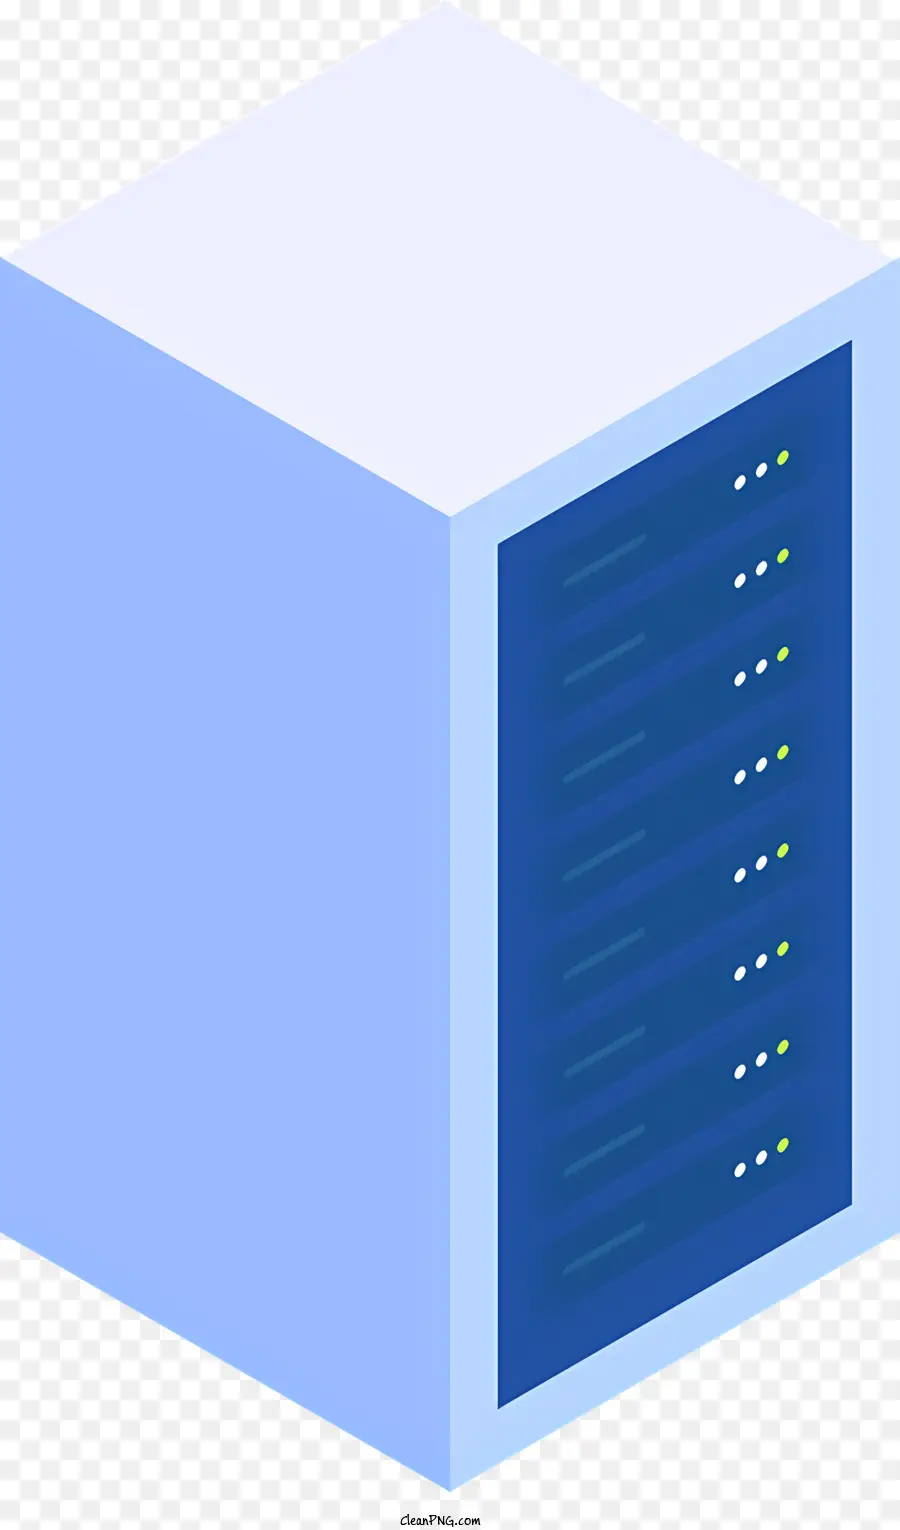 Server dei server del rack da data center Icon Server - Modern Data Center a parete in vetro con server connessi